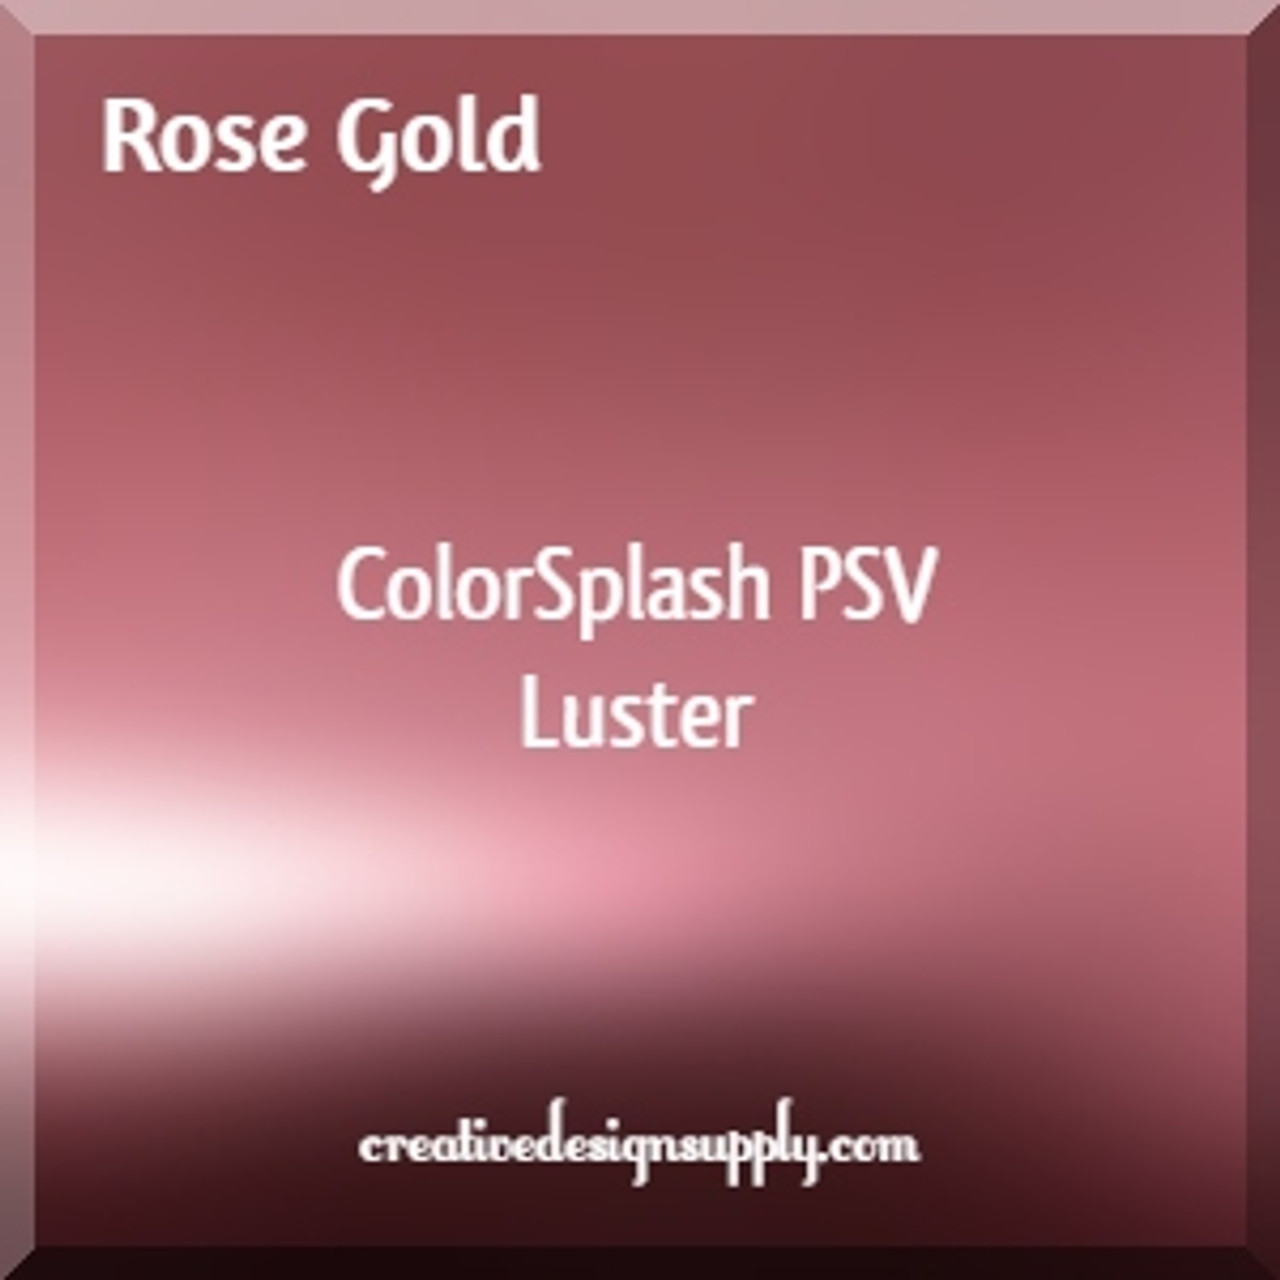 ColorSplash PSV Luster | Rose Gold